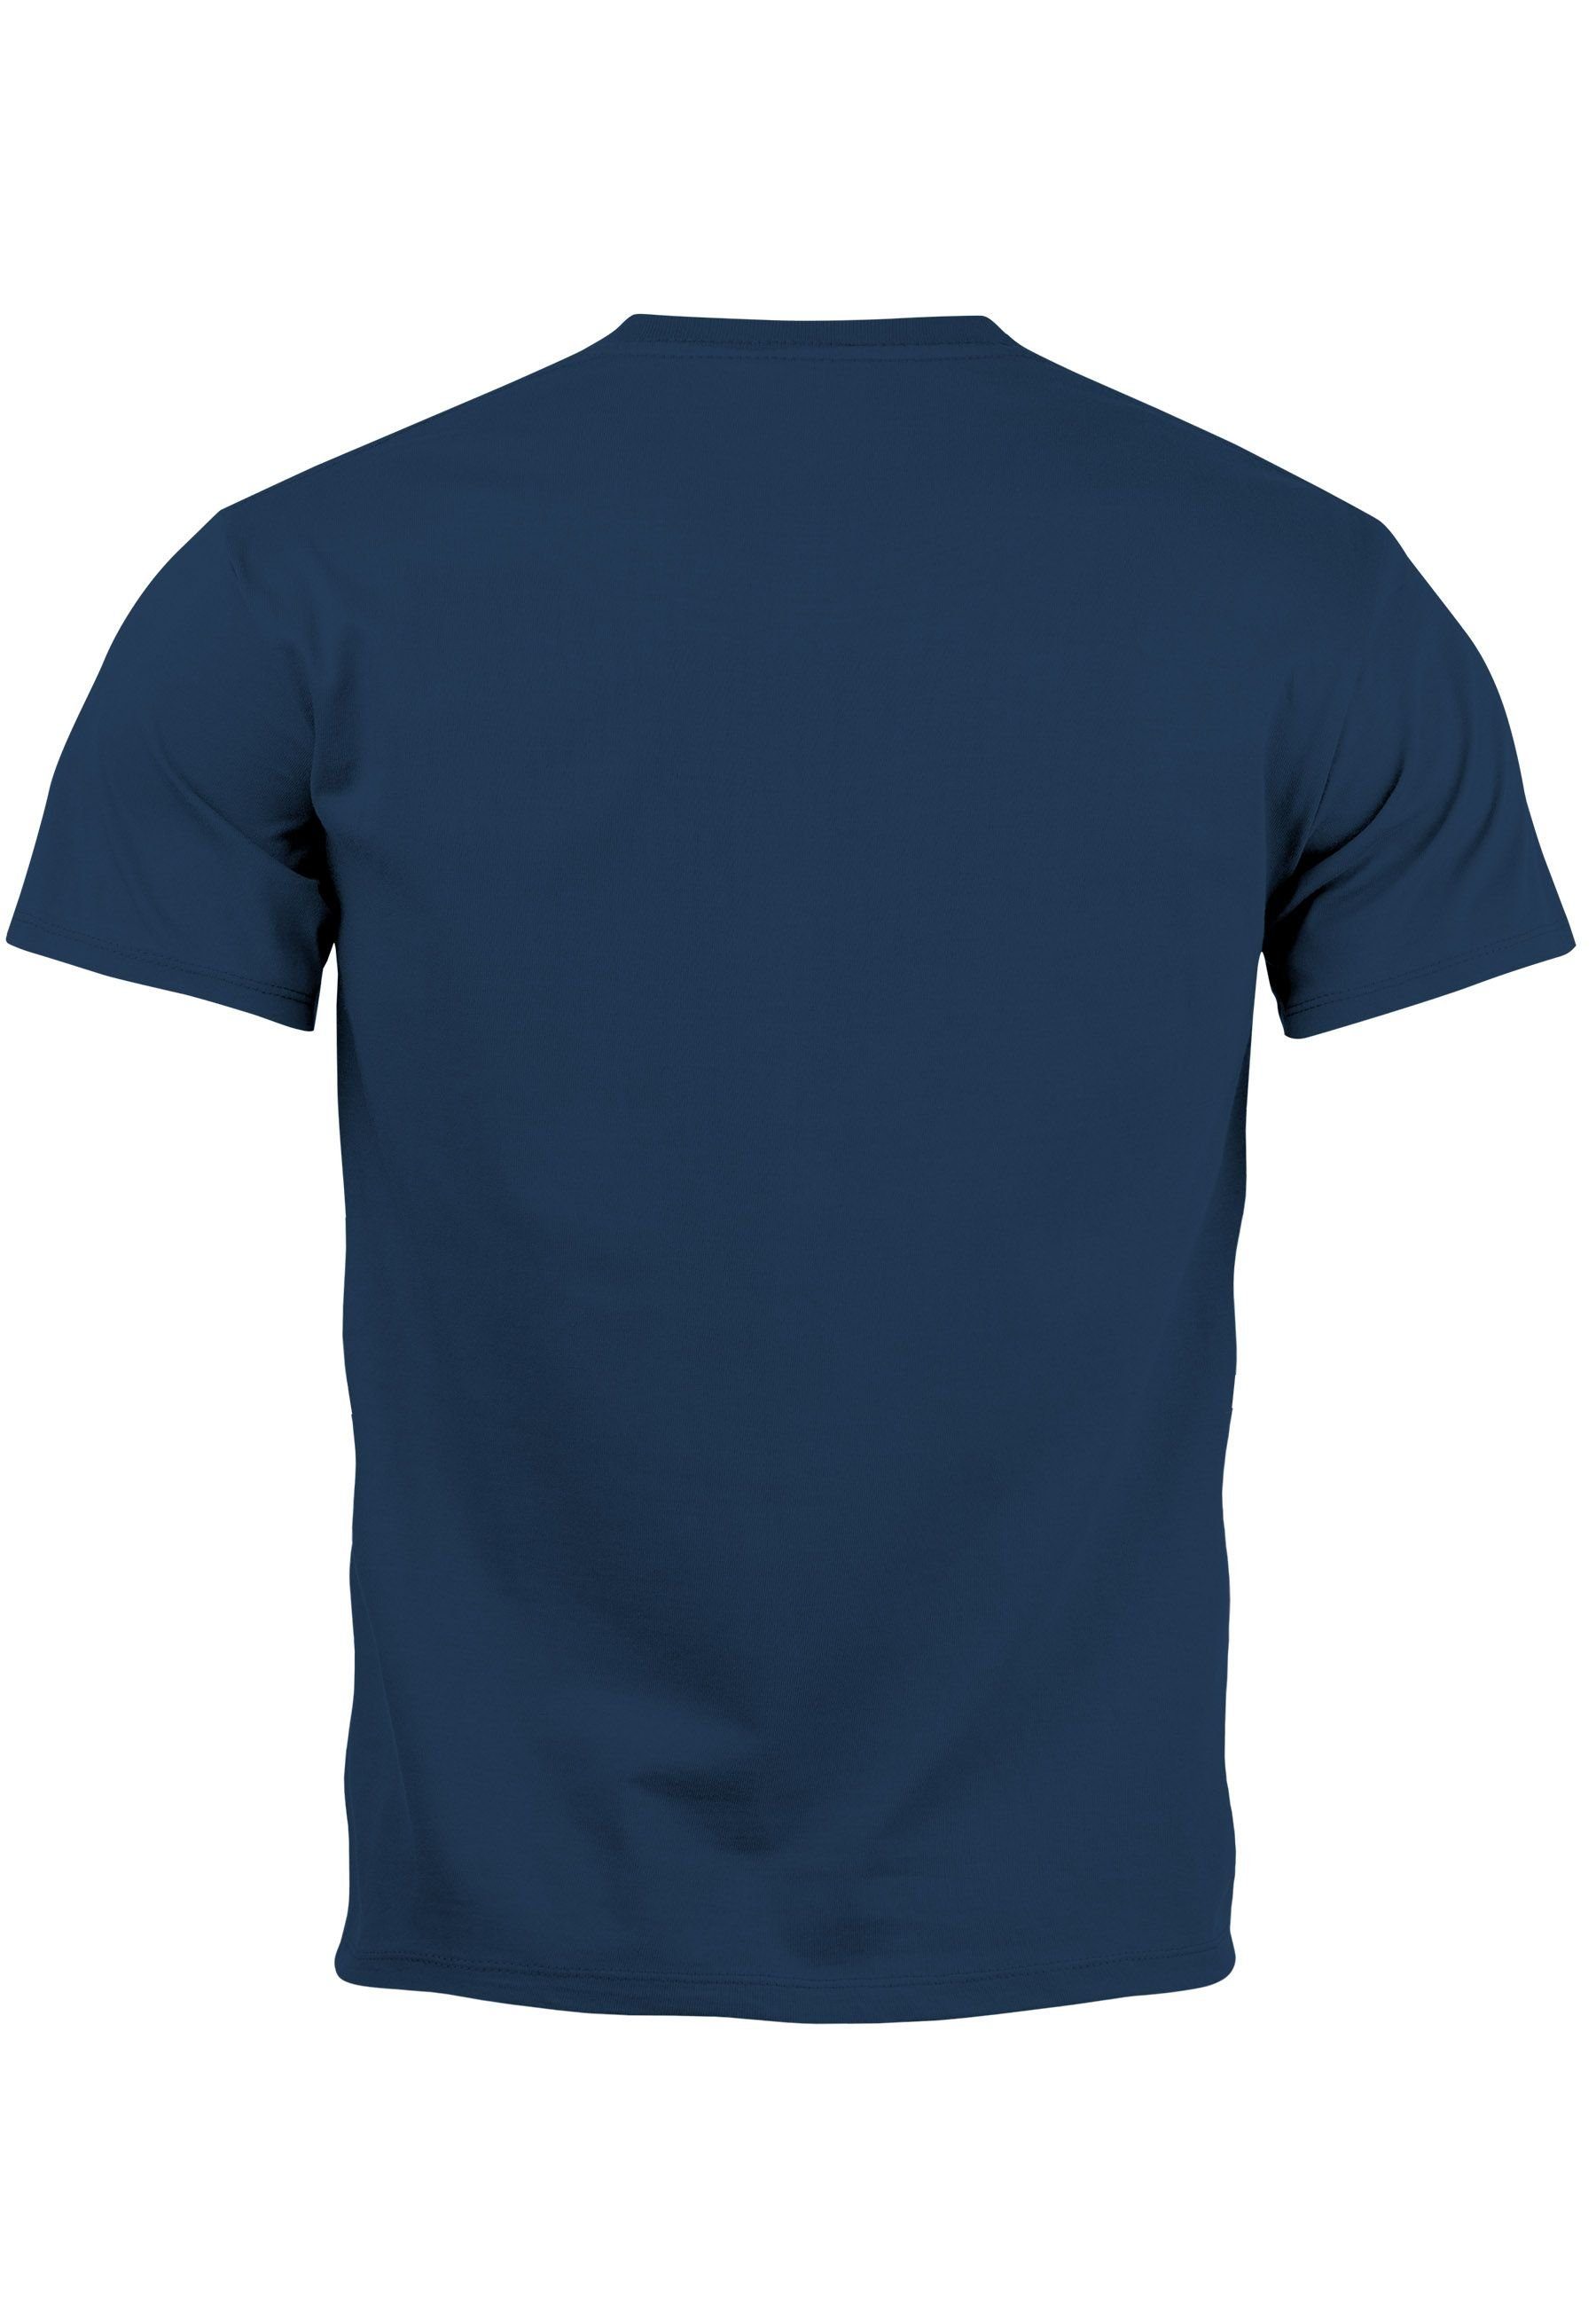 Lochspiel Reingeschaut Handzeichen Print-Shirt mit Print H Aufdruck T-Shirt Bongoloch Herren navy MoonWorks